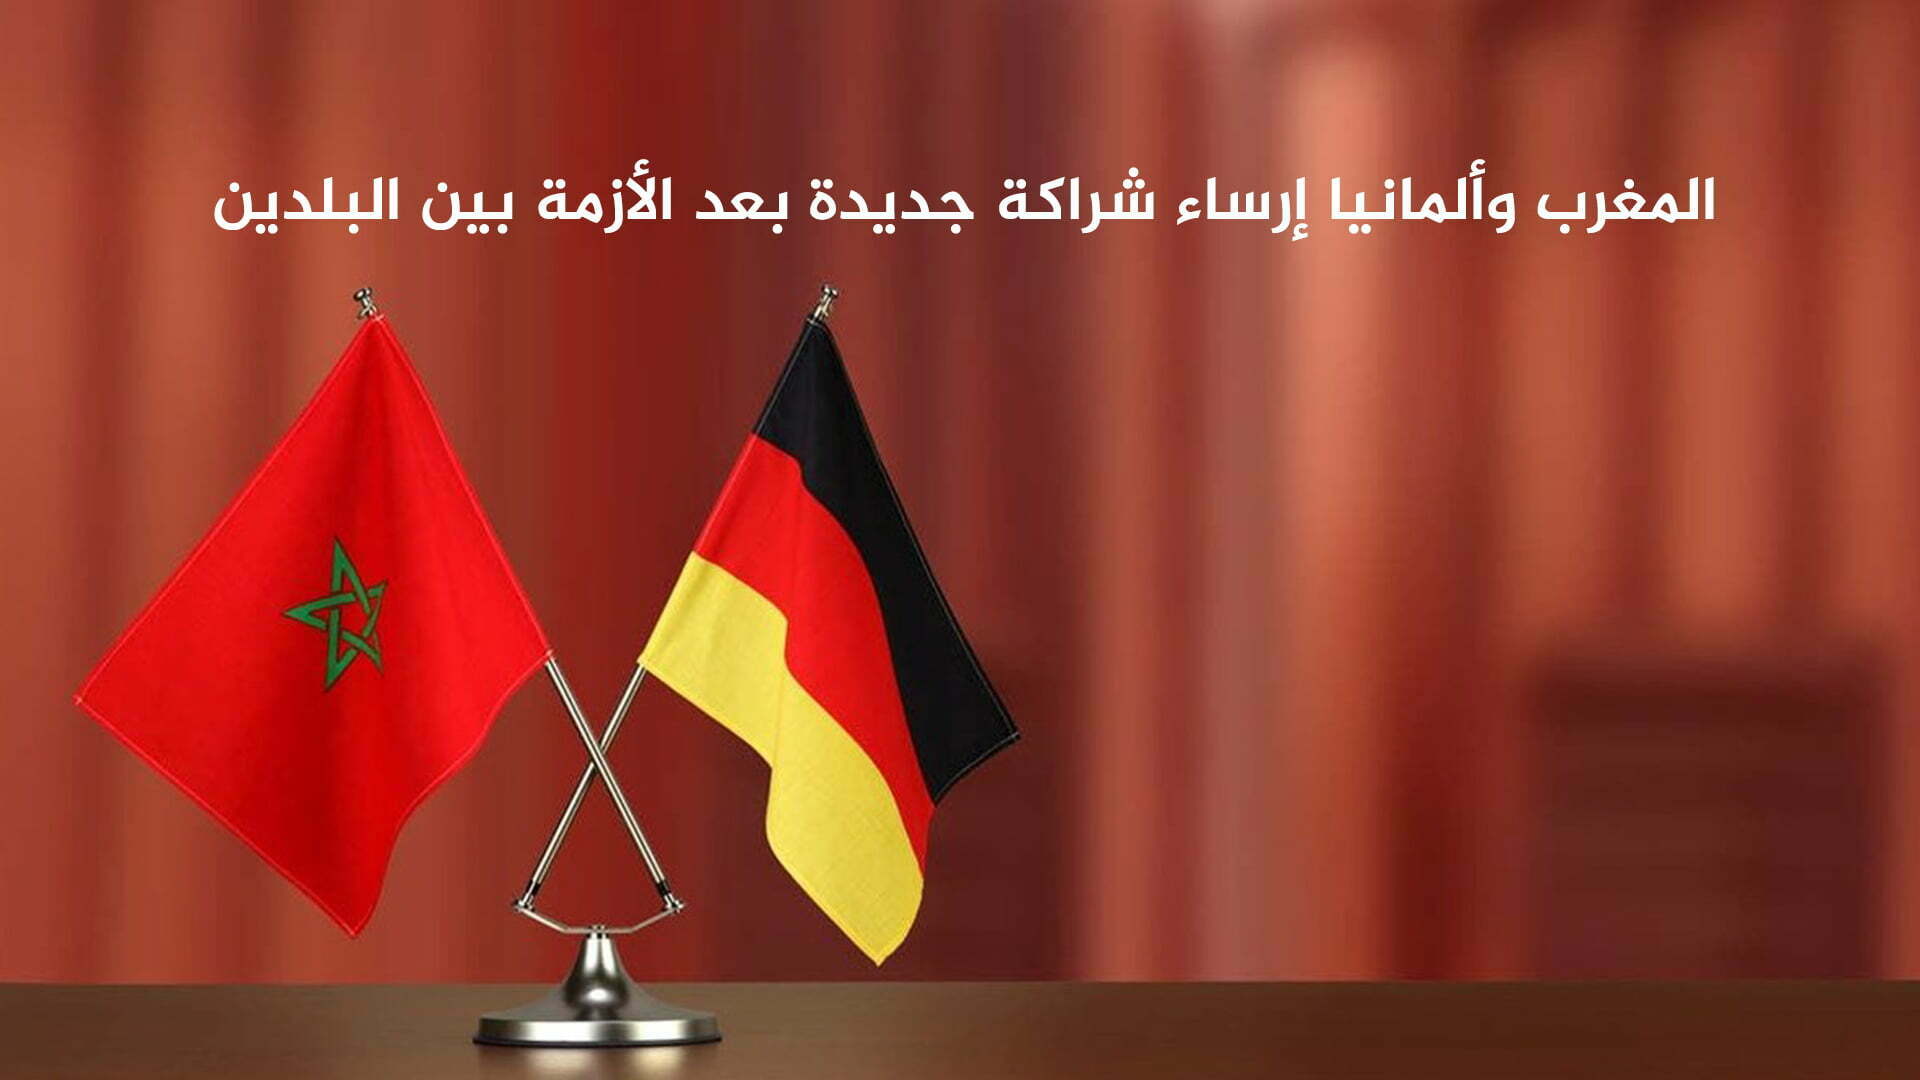 المغرب وألمانيا ارساء شراكة جديدة بعد الأزمة بين البلدين